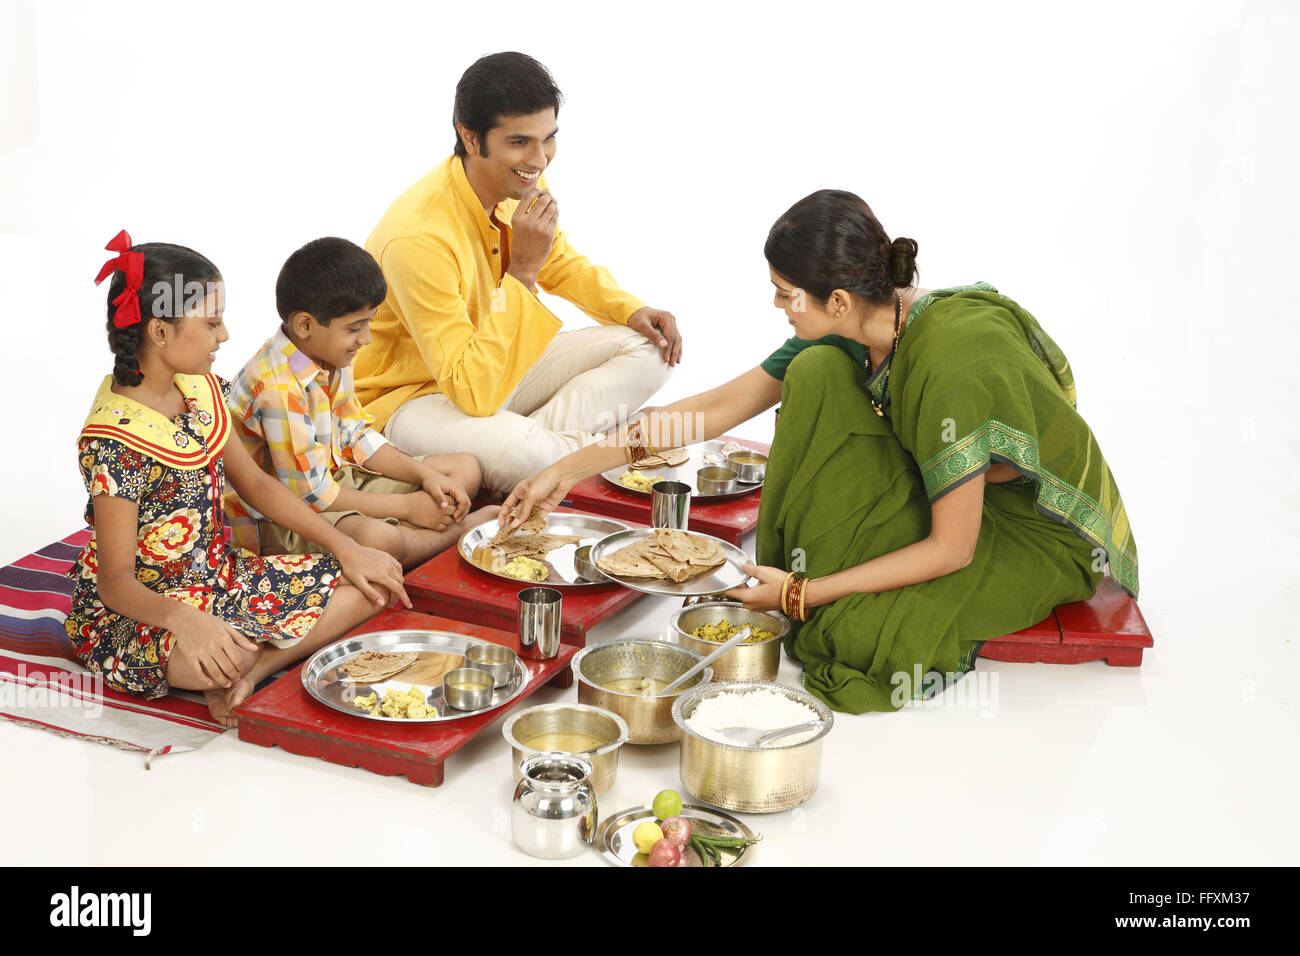 El padre y los hijos comiendo alimentos y madre sirviendo roti a hijo señor#743A, 743B, 743C, 743D Foto de stock